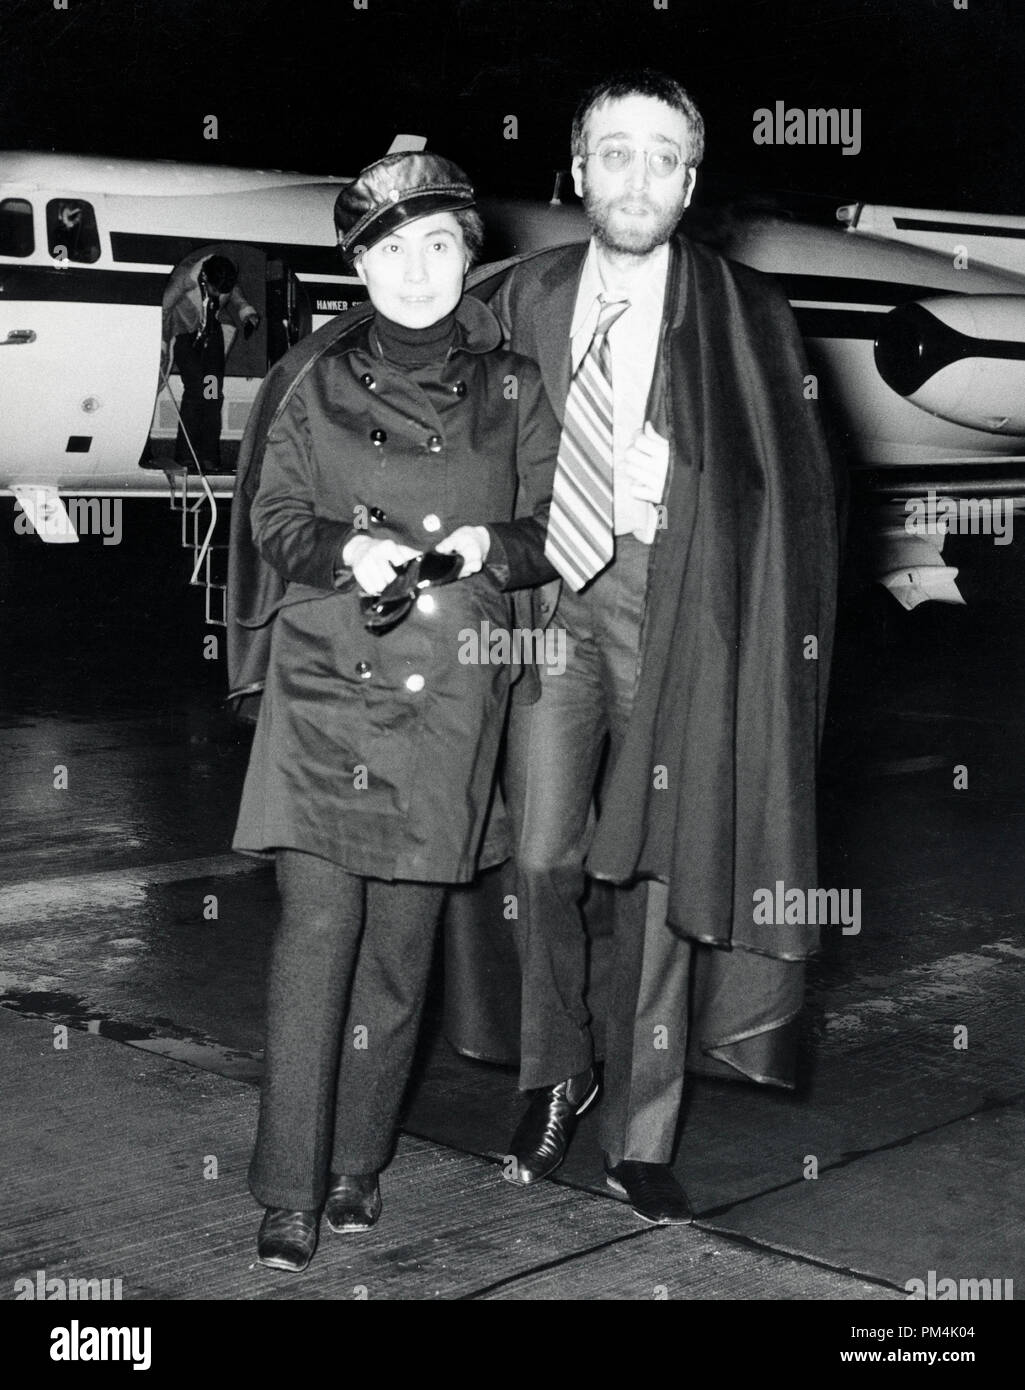 Femme de John Lennon avec Yoko Ono, arrivant à l'aéroport, 1970. Référence # 1013 Fichier 117 THA © CCR /Le Hollywood Archive - Tous droits réservés. Banque D'Images